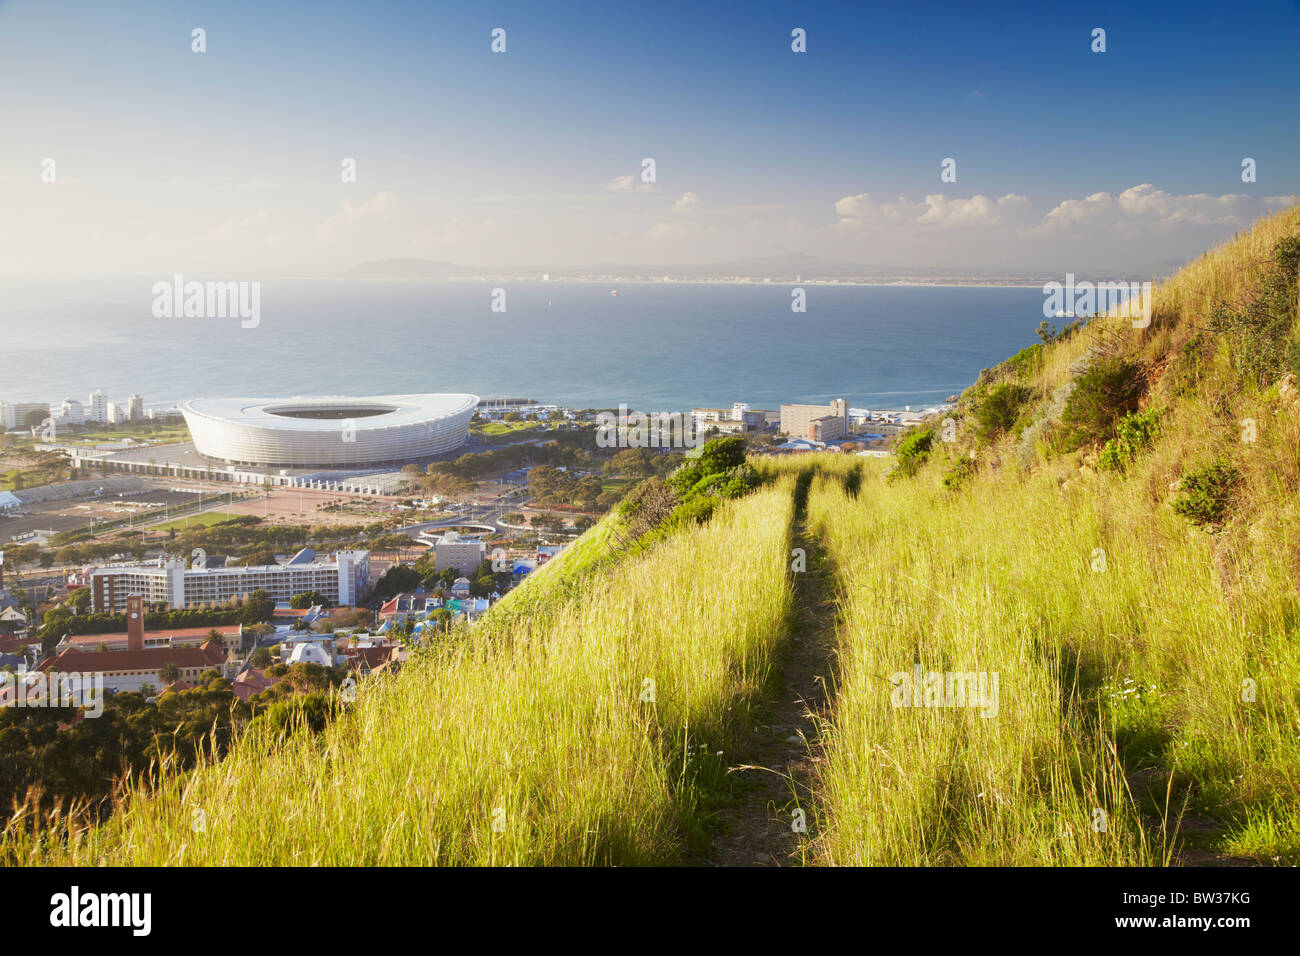 Avis de Green Point Stadium de Signal Hill, Cape Town, Western Cape, Afrique du Sud Banque D'Images